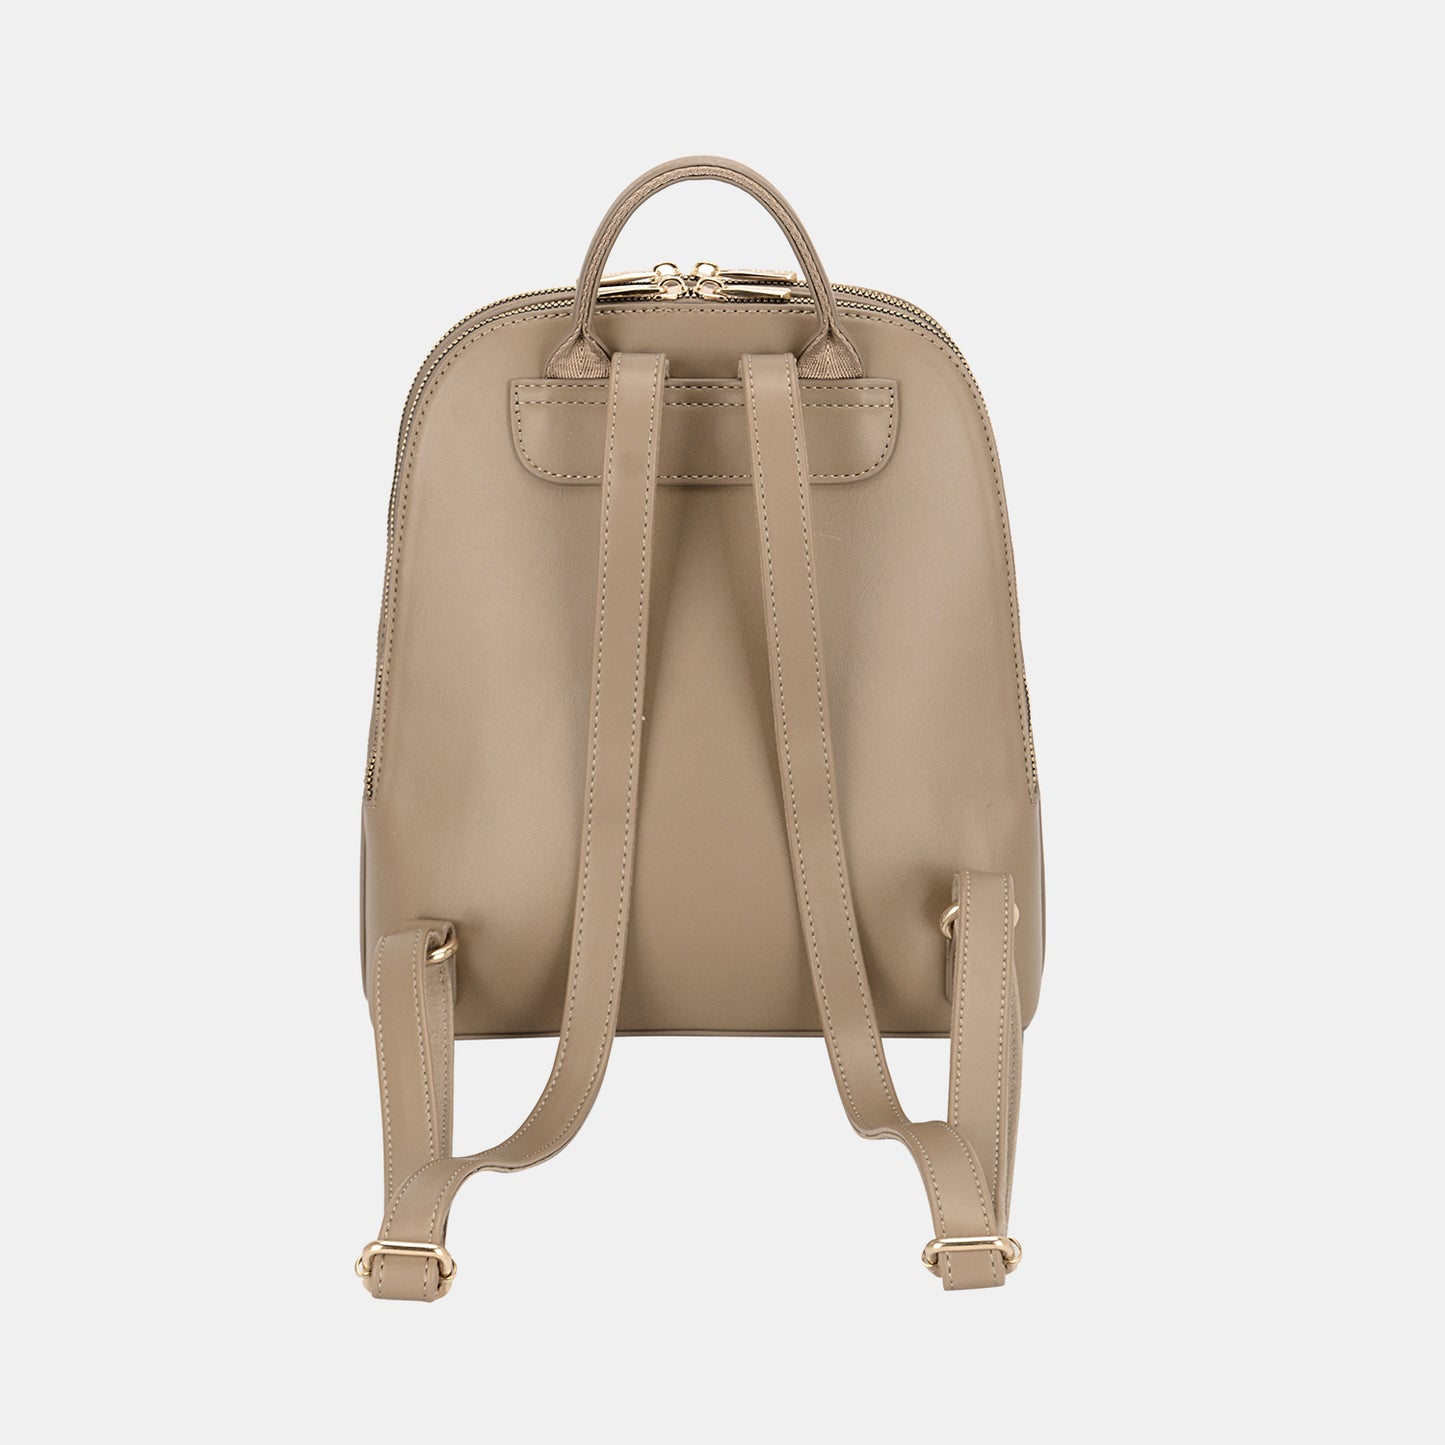 TEEK - David Jones Adjustable Straps Backpack Bag BAG TEEK Trend   